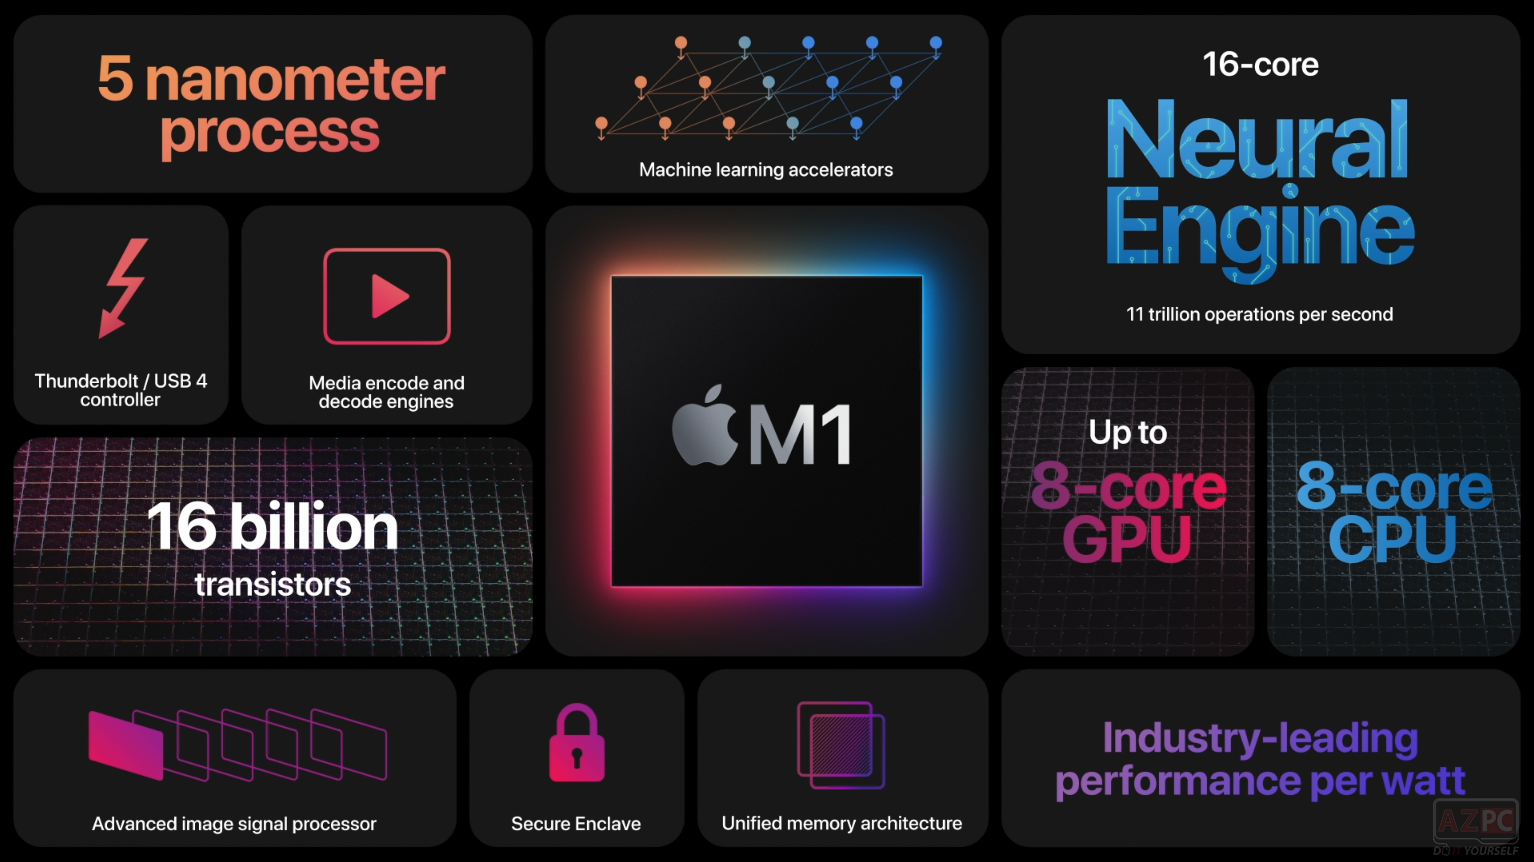 MacBook Pro 13 mới: pin 20 tiếng, hiệu suất nhanh hơn 3 lần, giá từ 30 triệu